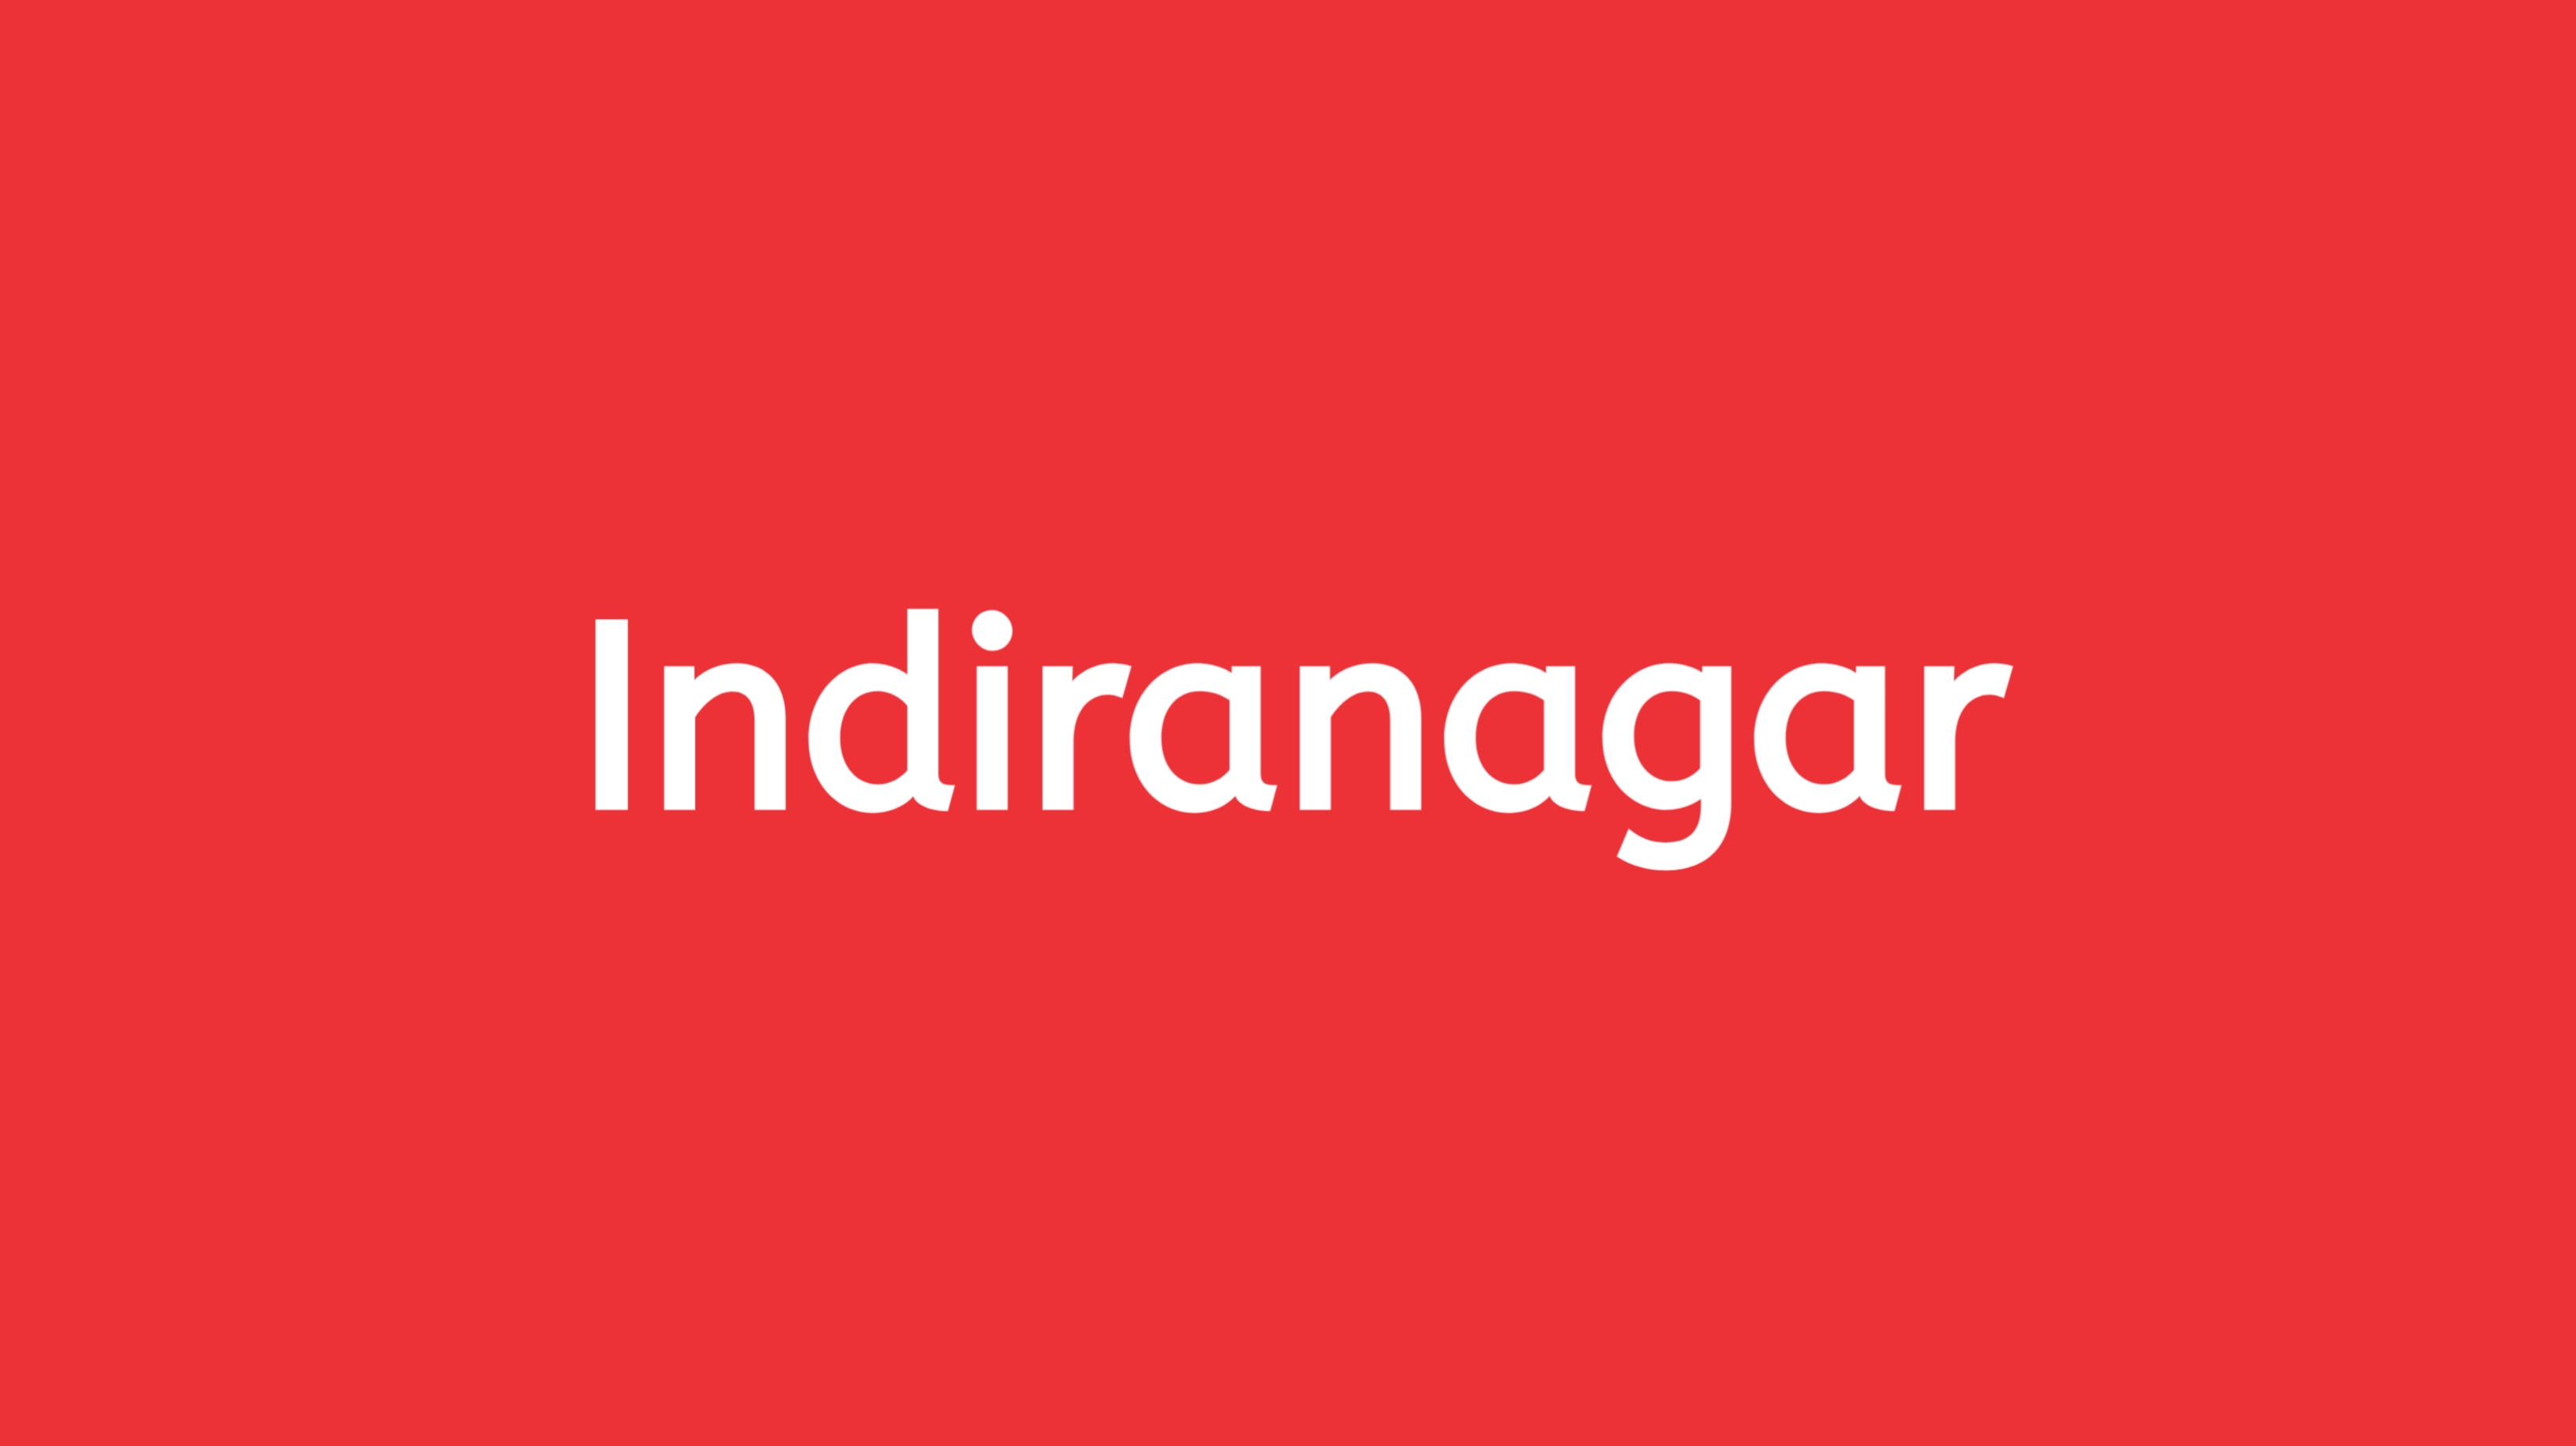 StayFit-Indiranagar